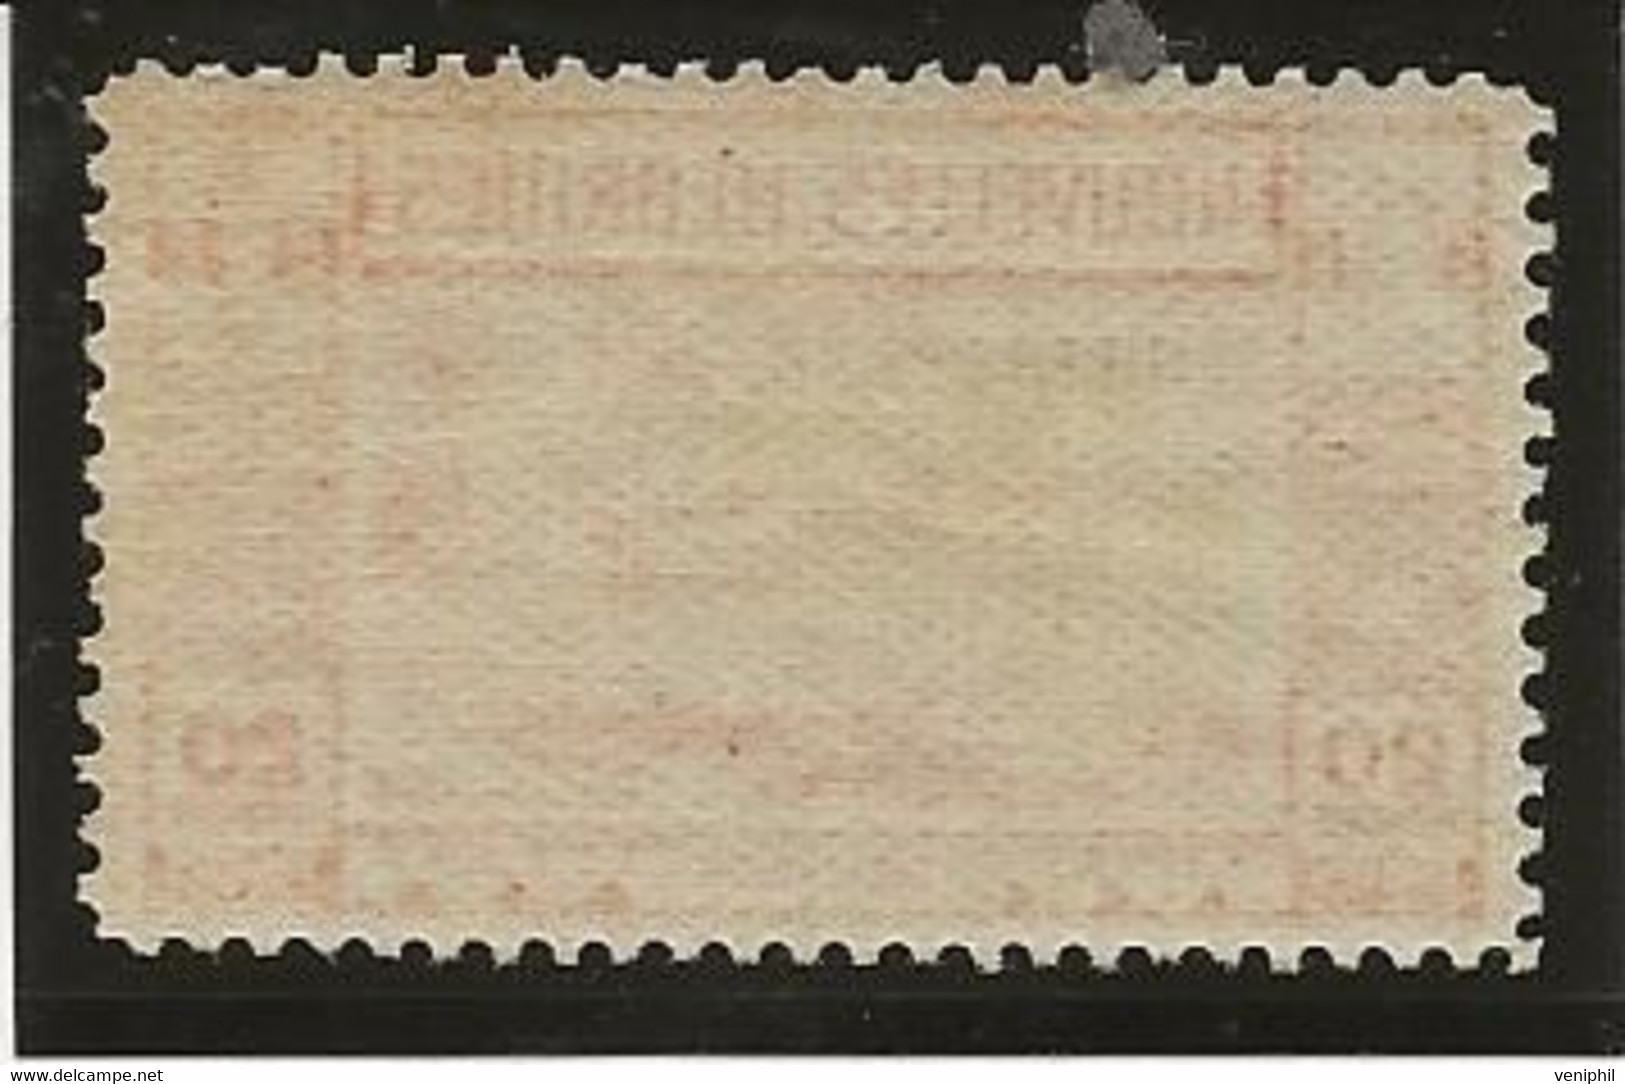 NOUVELLES - HEBRIDES -TIMBRE TAXE N° 13 NEUF SANS CHARNIERE -ANNEE 1938 - COTE : 12 € - Segnatasse